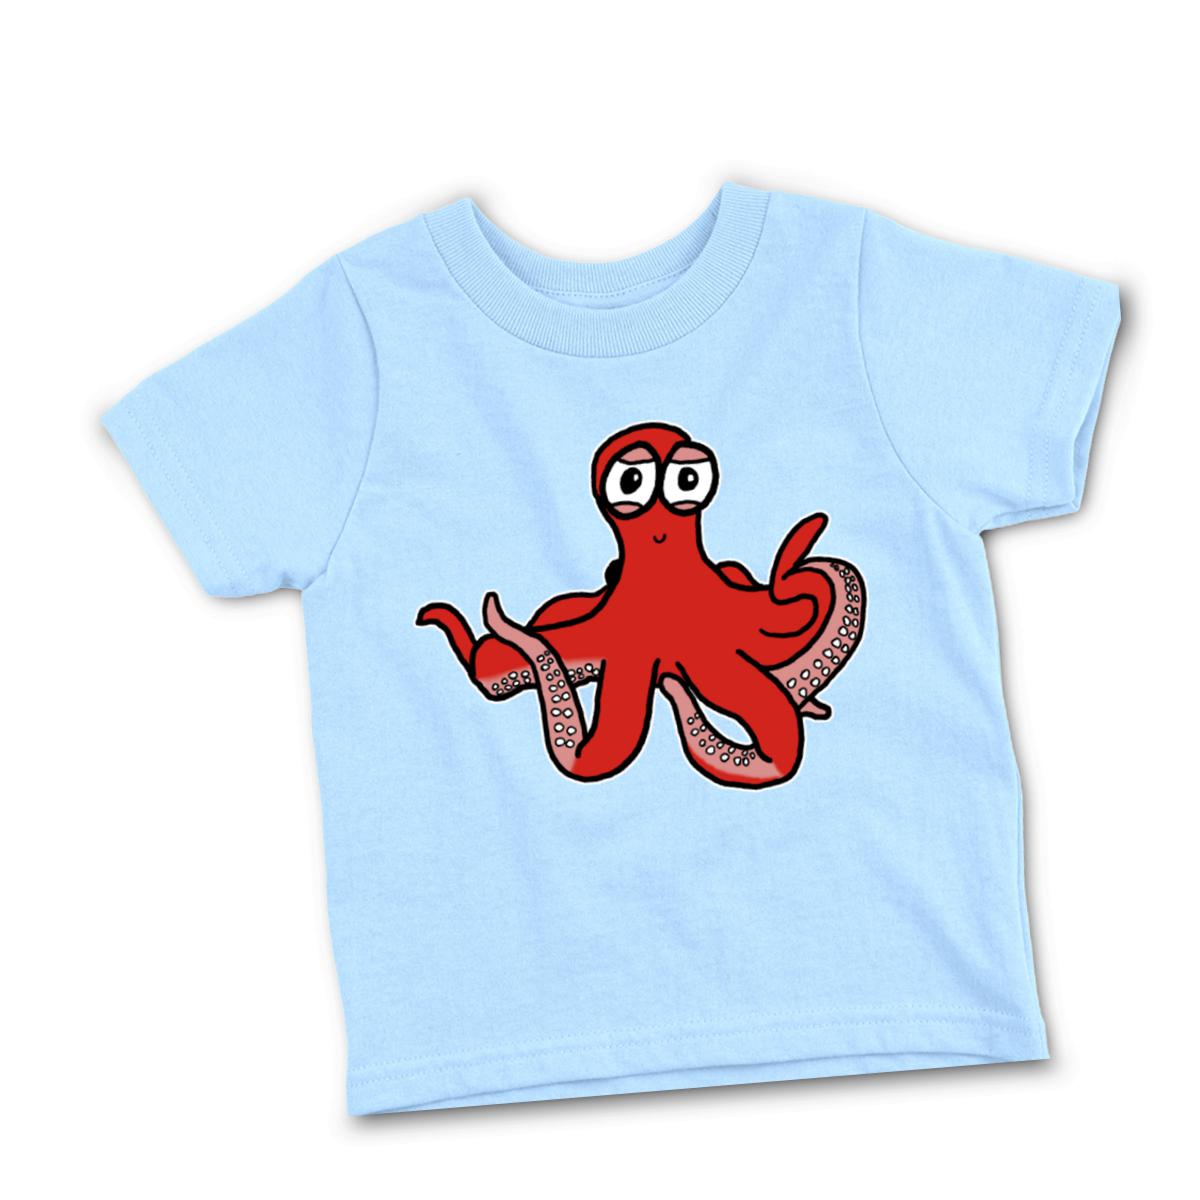 Octopus Toddler Tee 56T light-blue